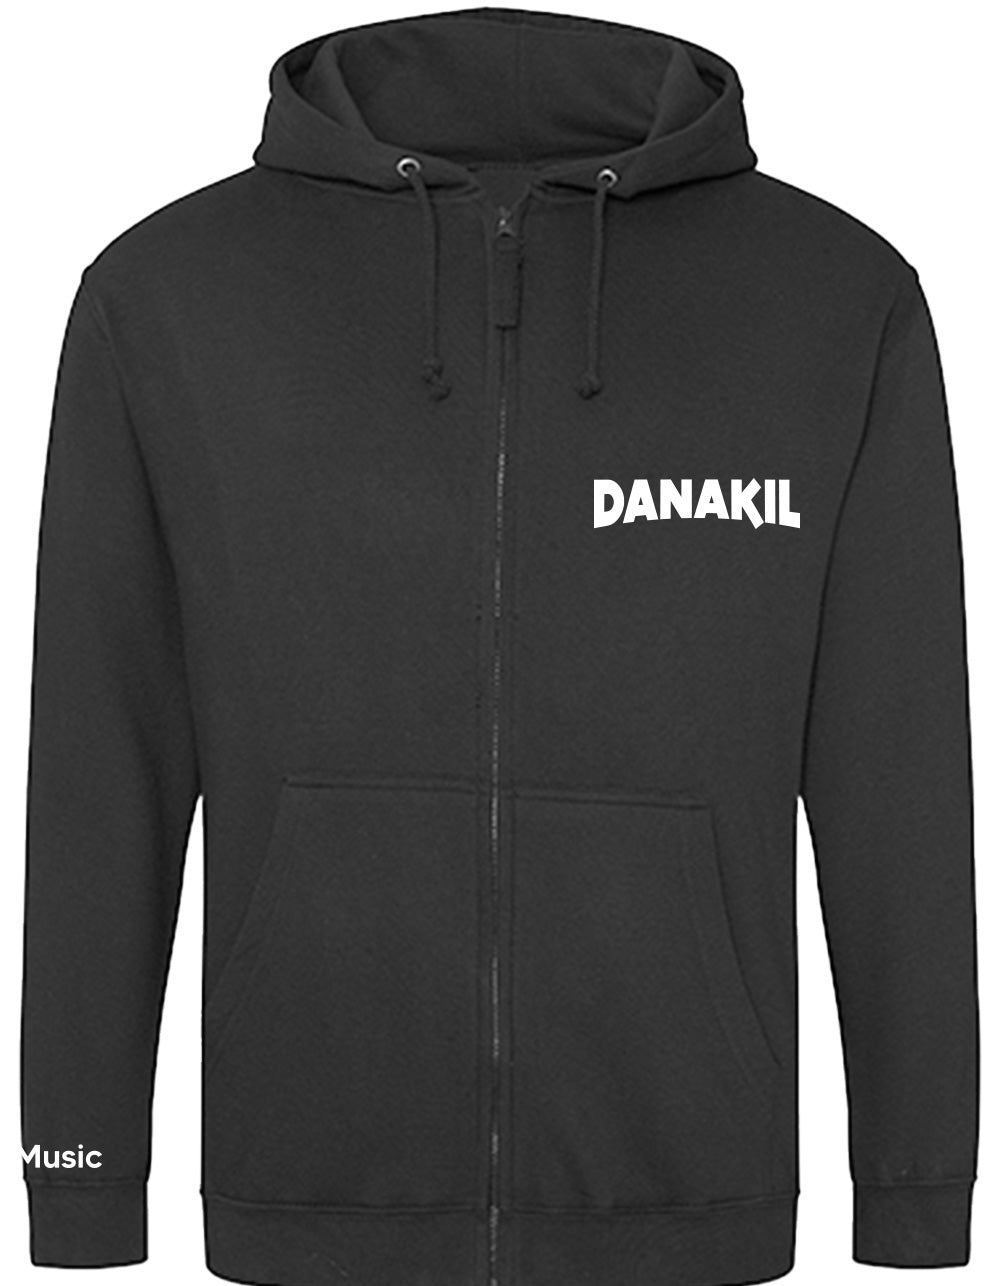 Danakil - Veste zippée Rasta